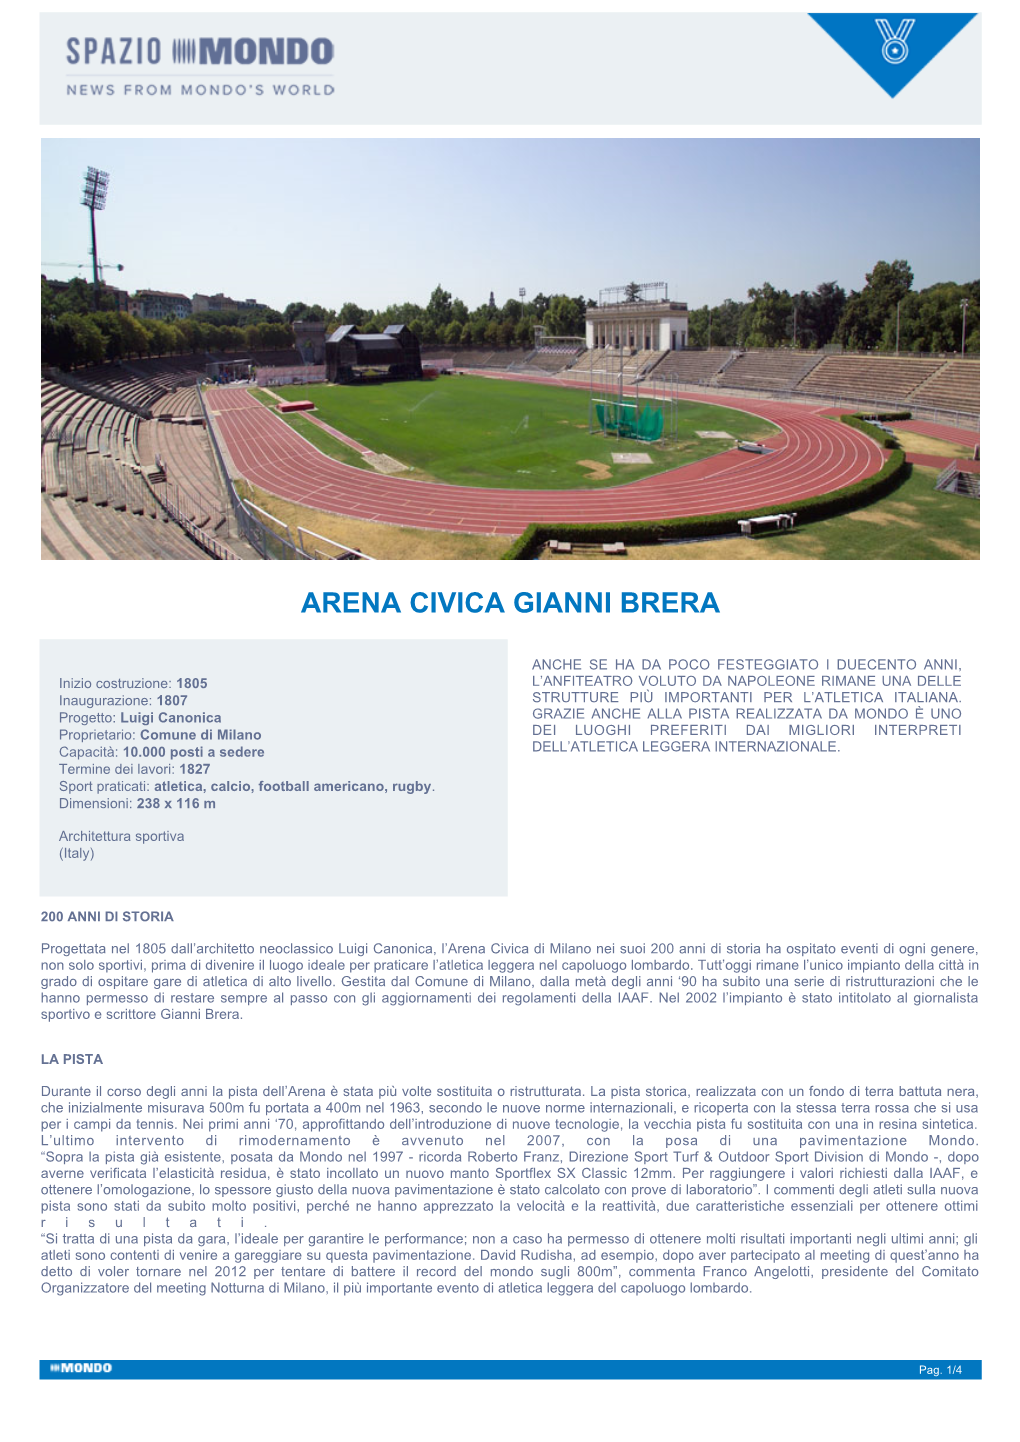 Arena Civica Gianni Brera